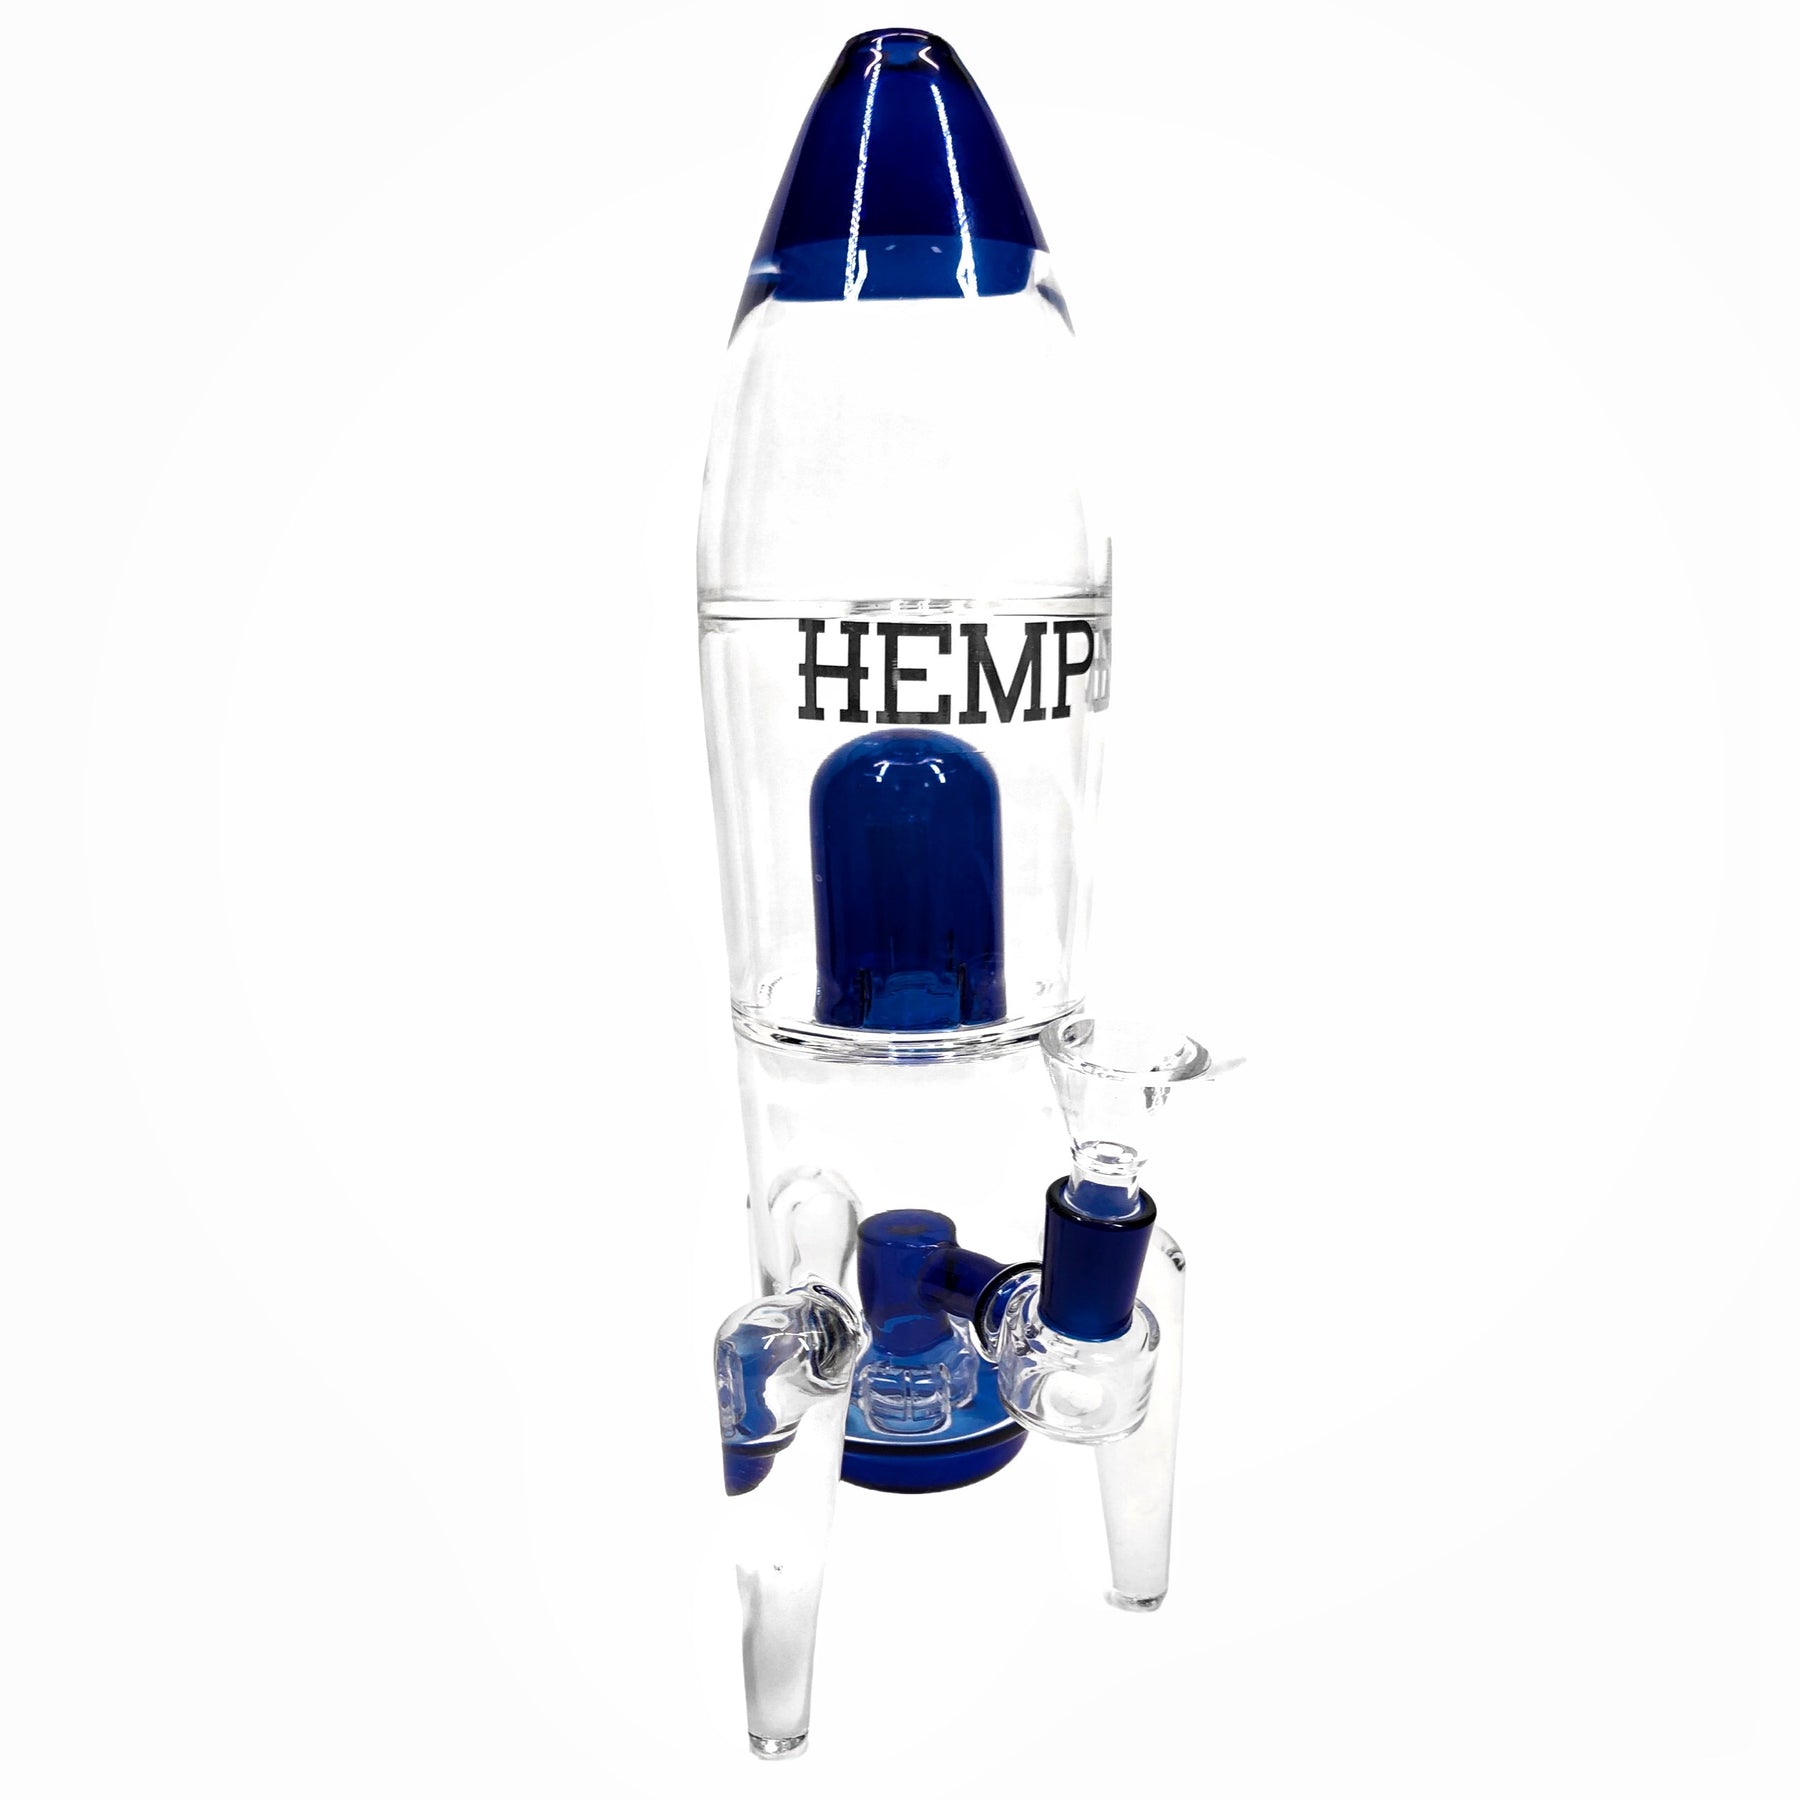 Rocket Ship Water Pipe by Hemper